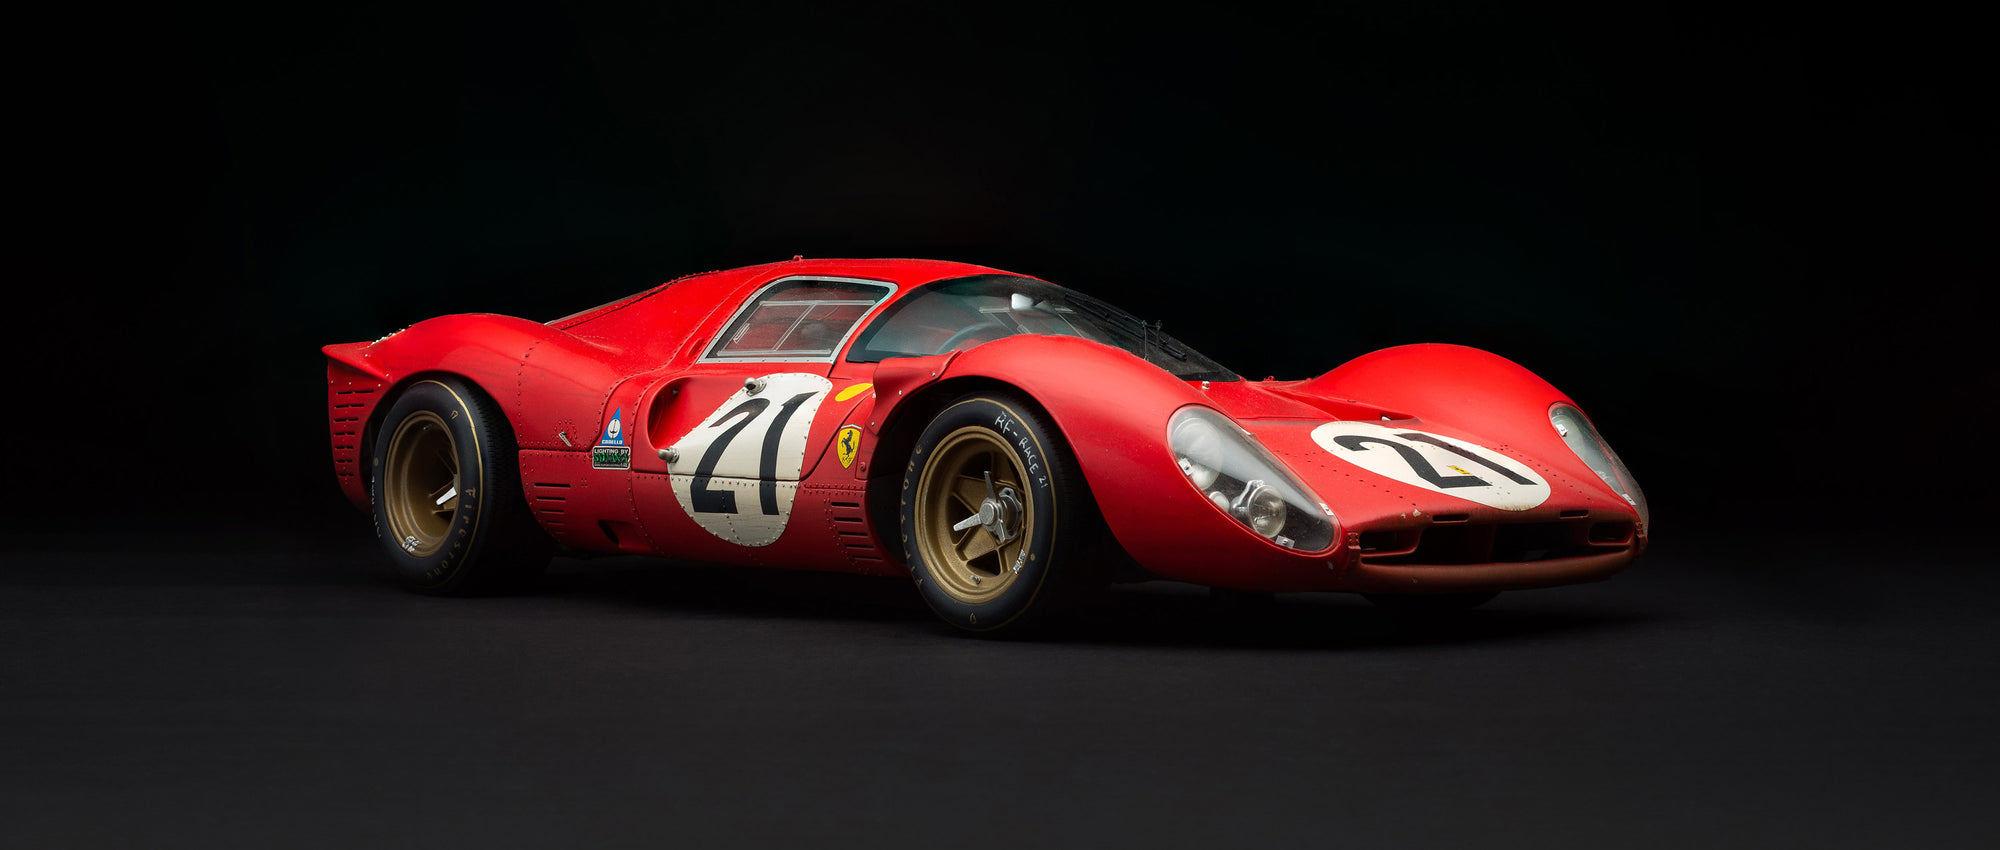 Ferrari 330 P4 - 1967 Le Mans - 2do lugar - Ganador de la clase - CON SUCIEDAD DE CARRERA